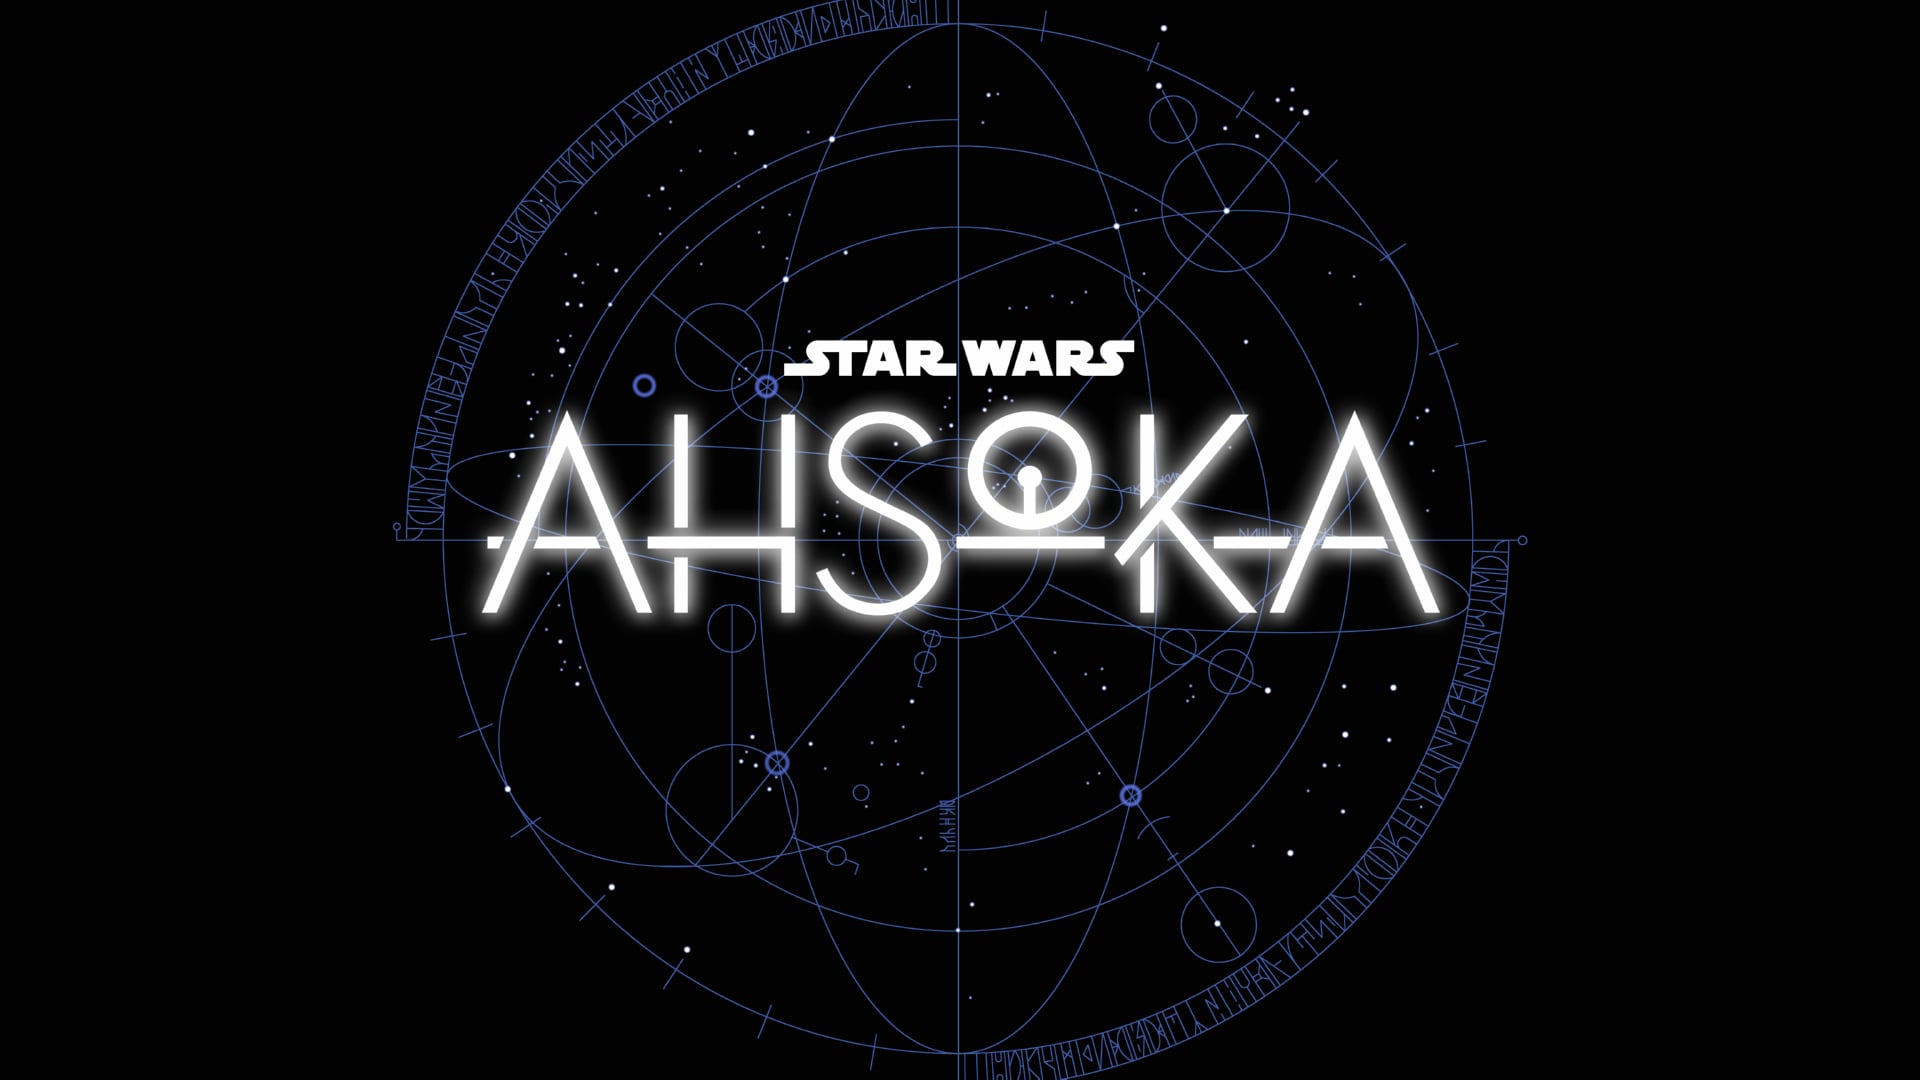 Digital Art Star Wars Ahsoka at 750 x 1334 iPhone 6 size wallpapers HD quality